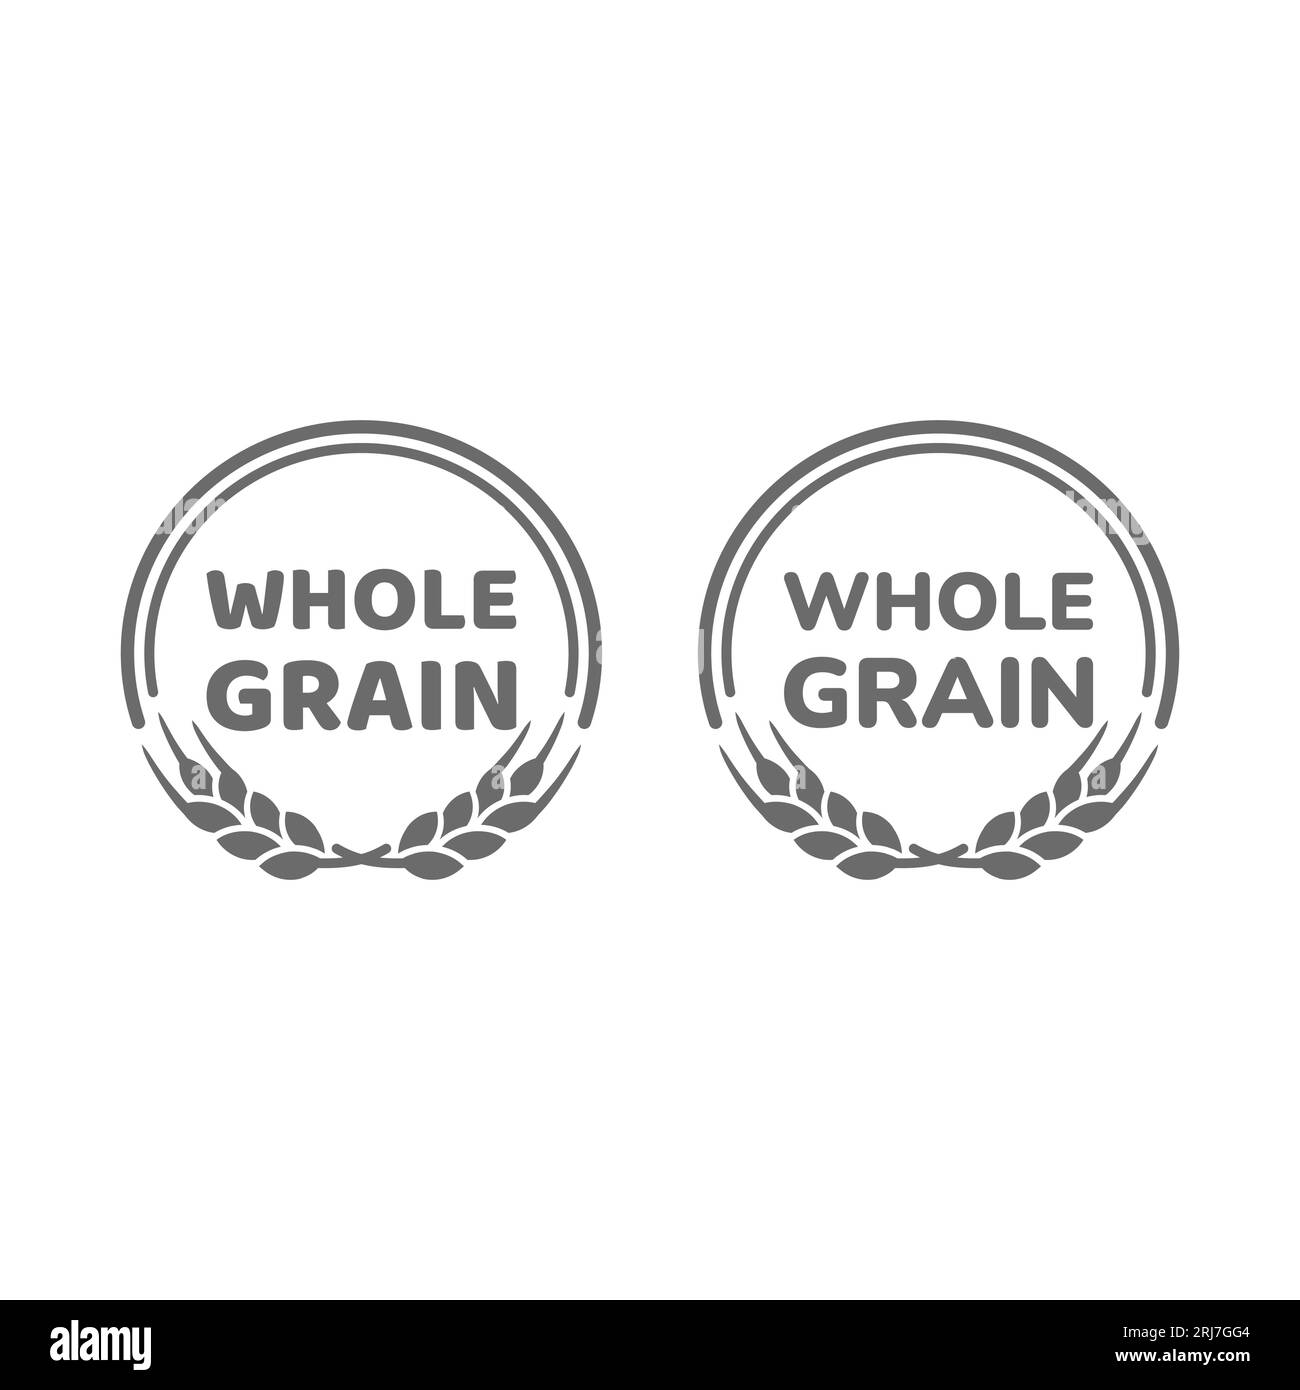 Ganzkorn-Vektor-Etikettenset. Stempel für Vollkornmehl, Brot oder Getreide. Stock Vektor